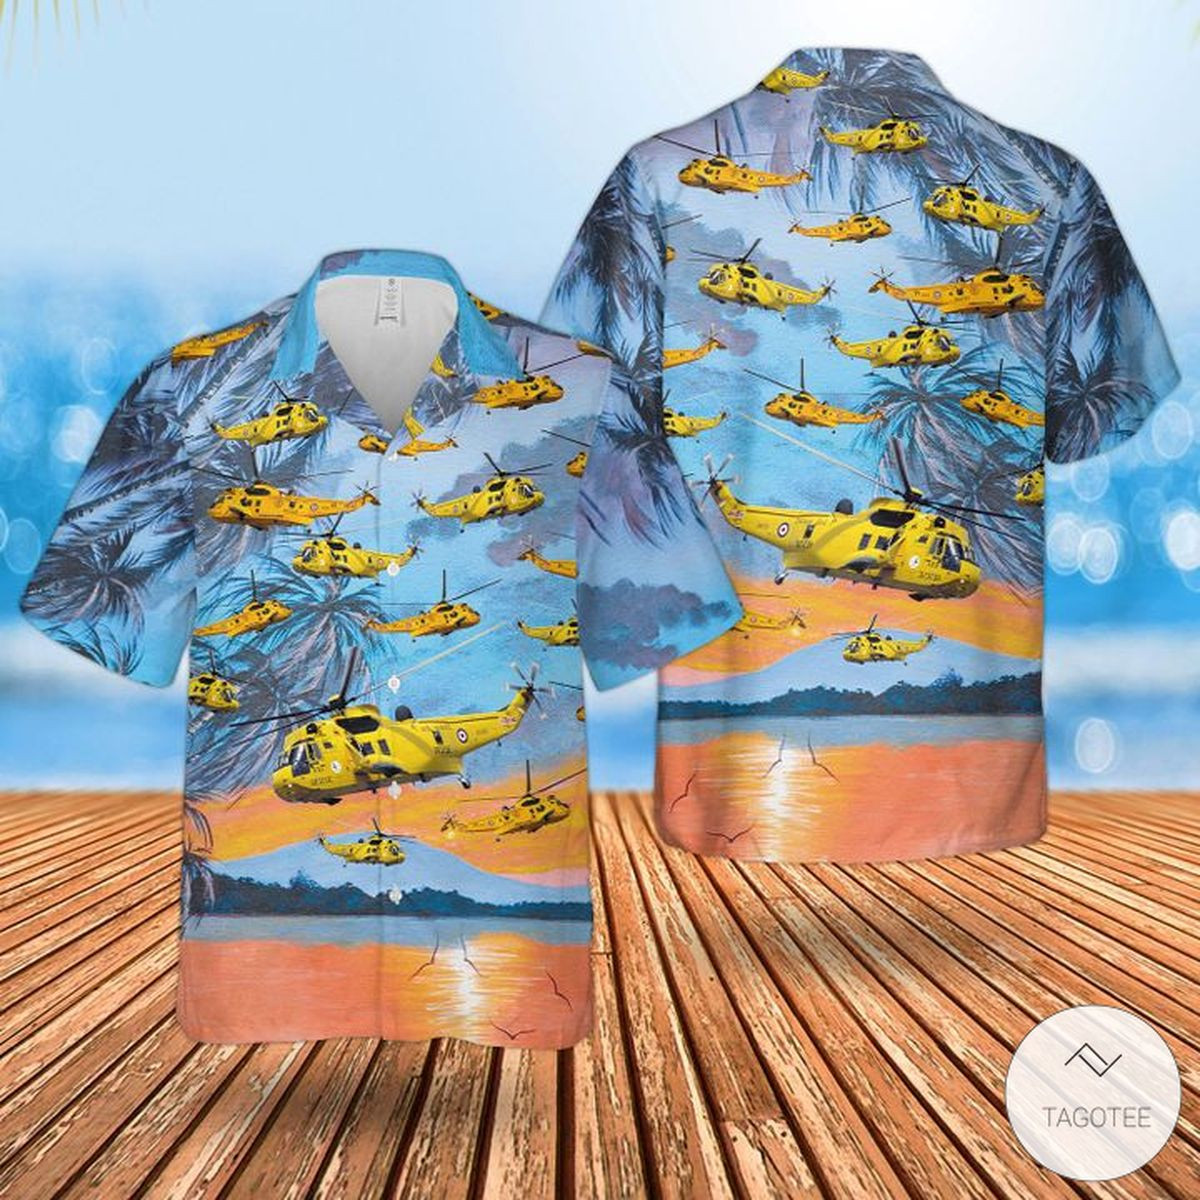 Raf Westland Sea King Har3 Hawaiian Shirts